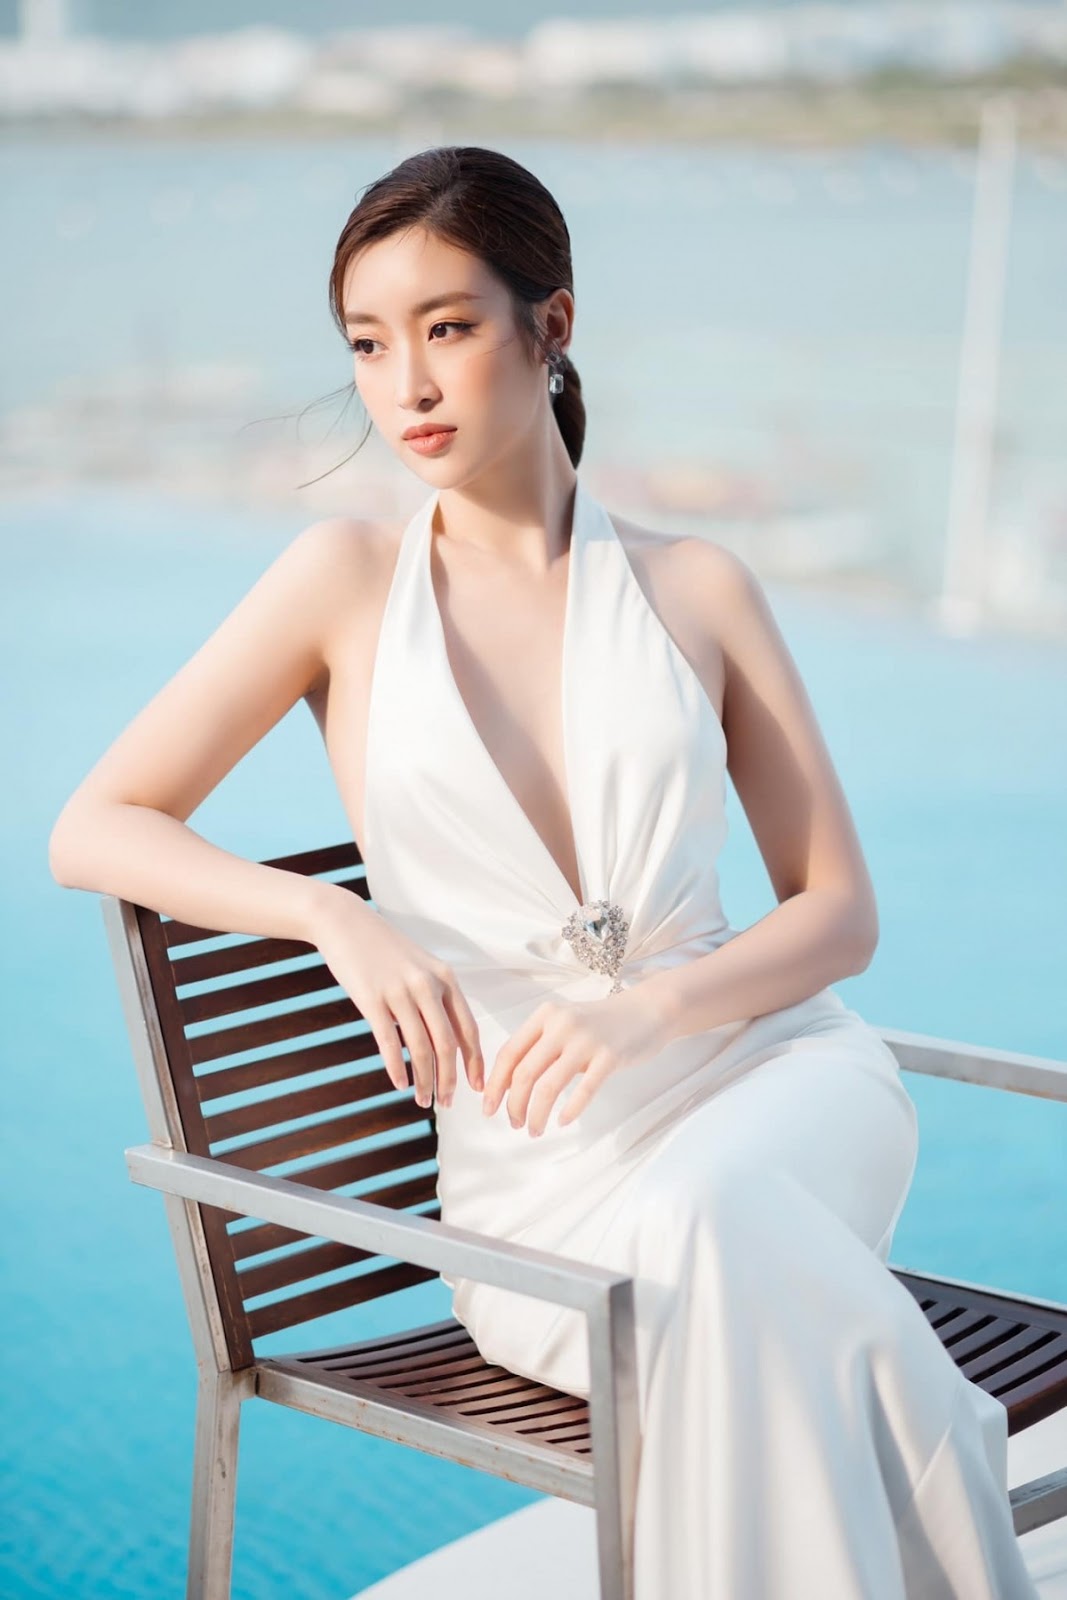 Công ty Đỗ Vinh Quang – chồng sắp cưới Hoa hậu Đỗ Mỹ Linh làm Chủ tịch kinh doanh ra sao? - ảnh 15